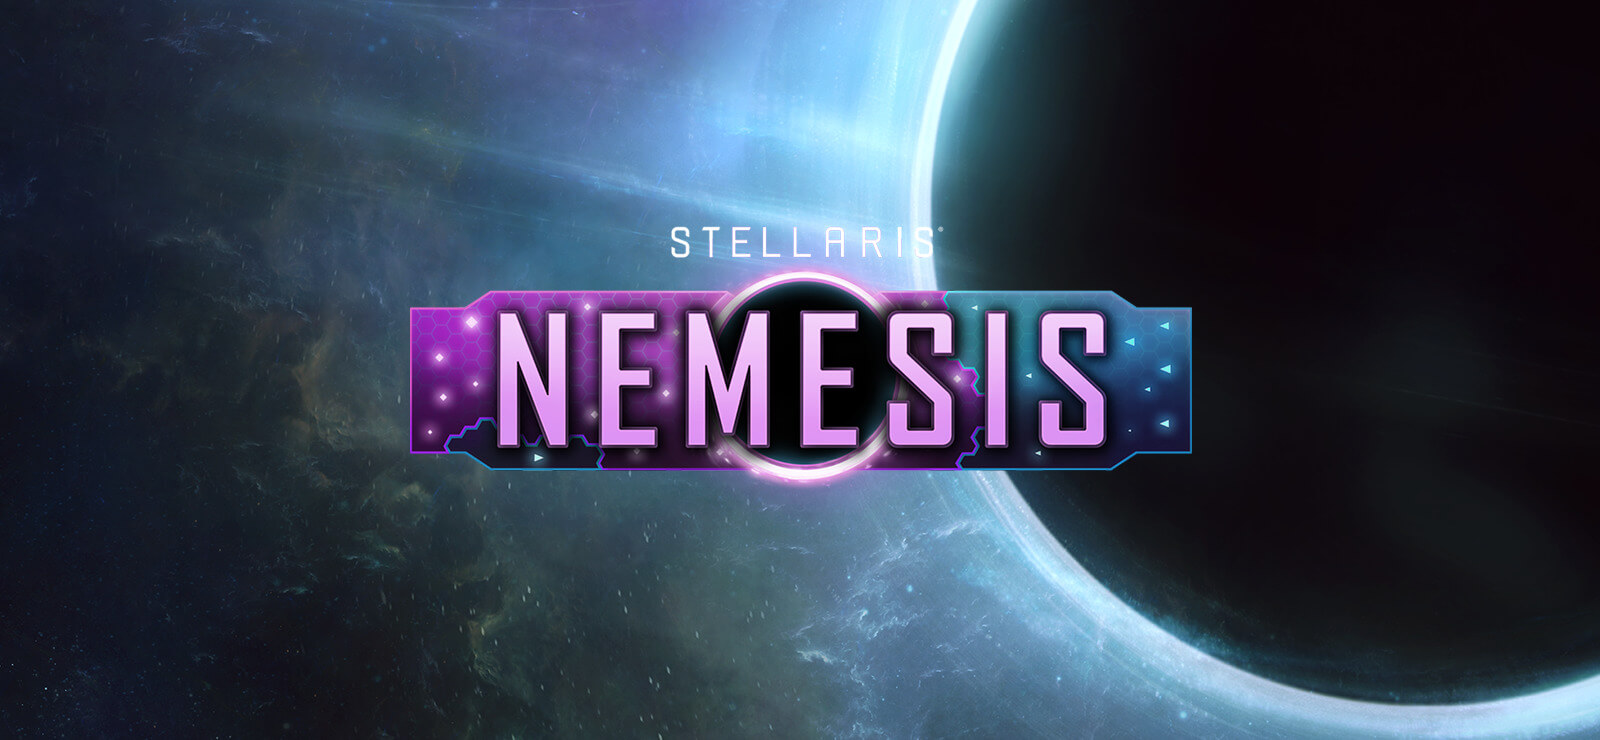 Особенности обновления Nemesis к игре Stellaris